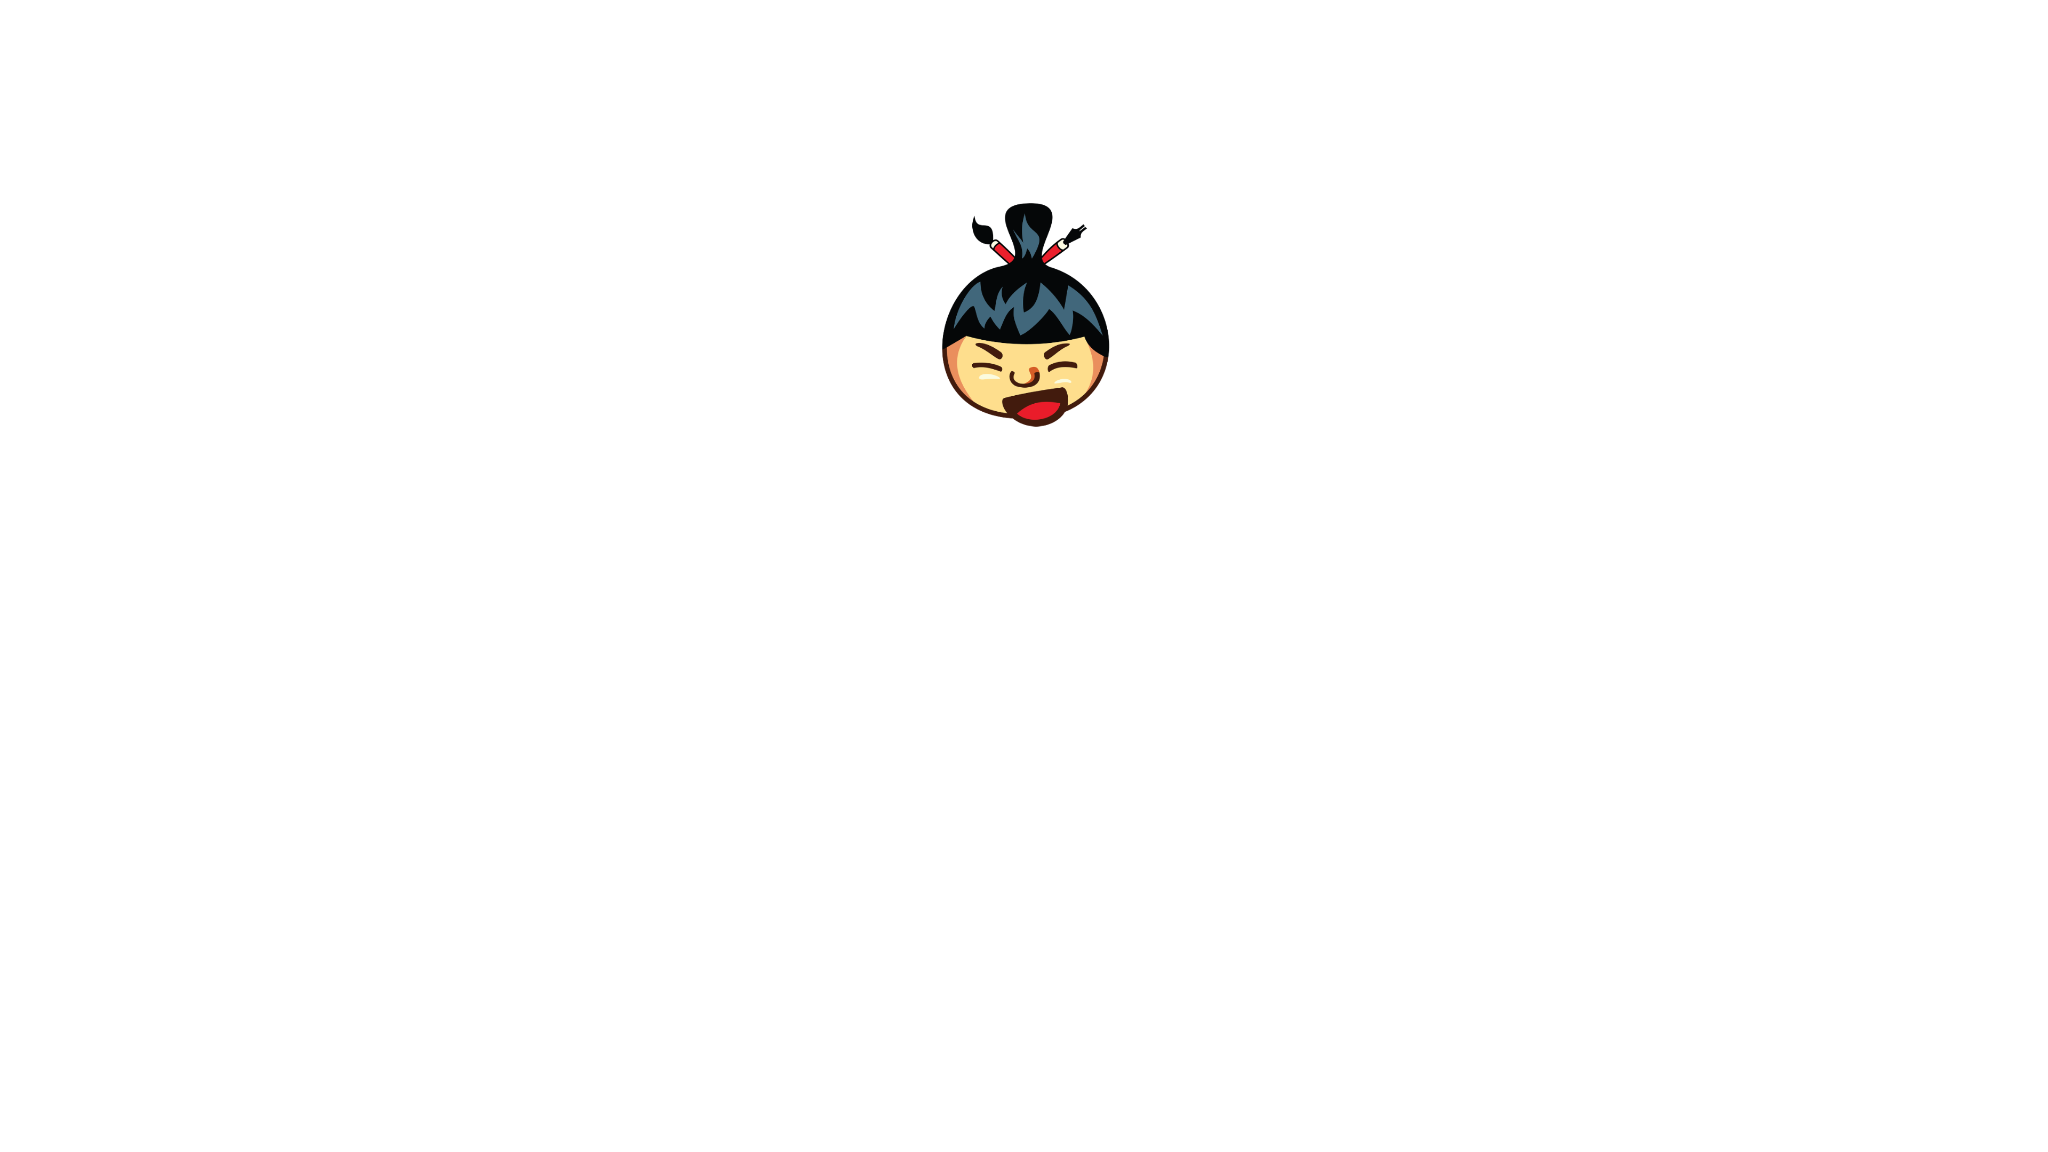 Sumo Video Intro - được tạo bởi Lauri Koutaniemi với paint